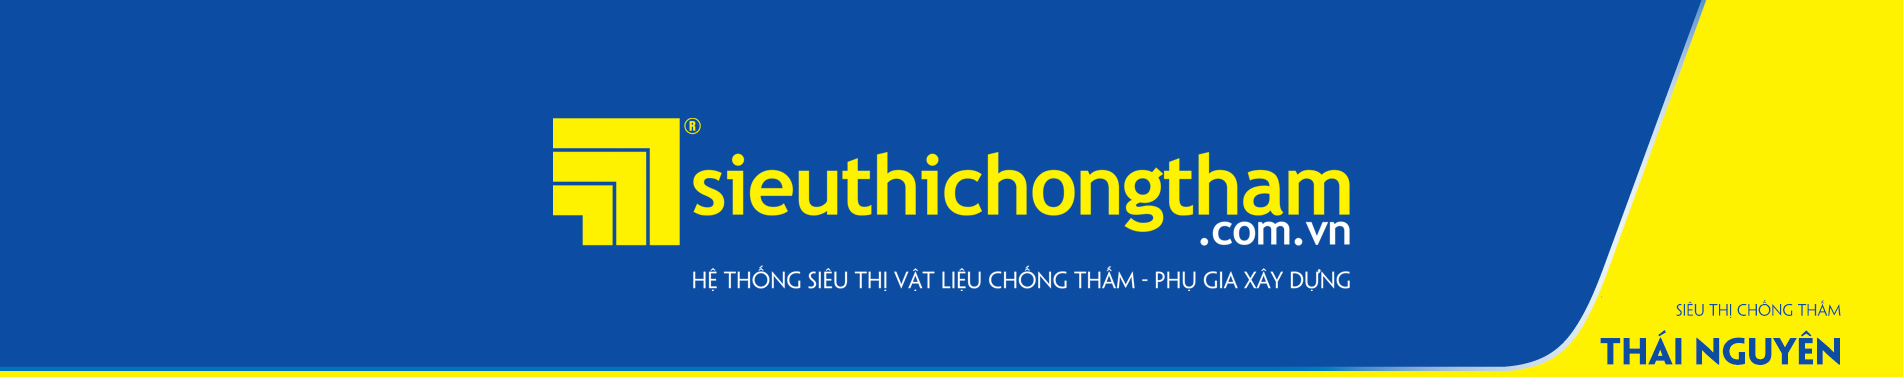 Sieu Thi Chong Tham Thai Nguyen